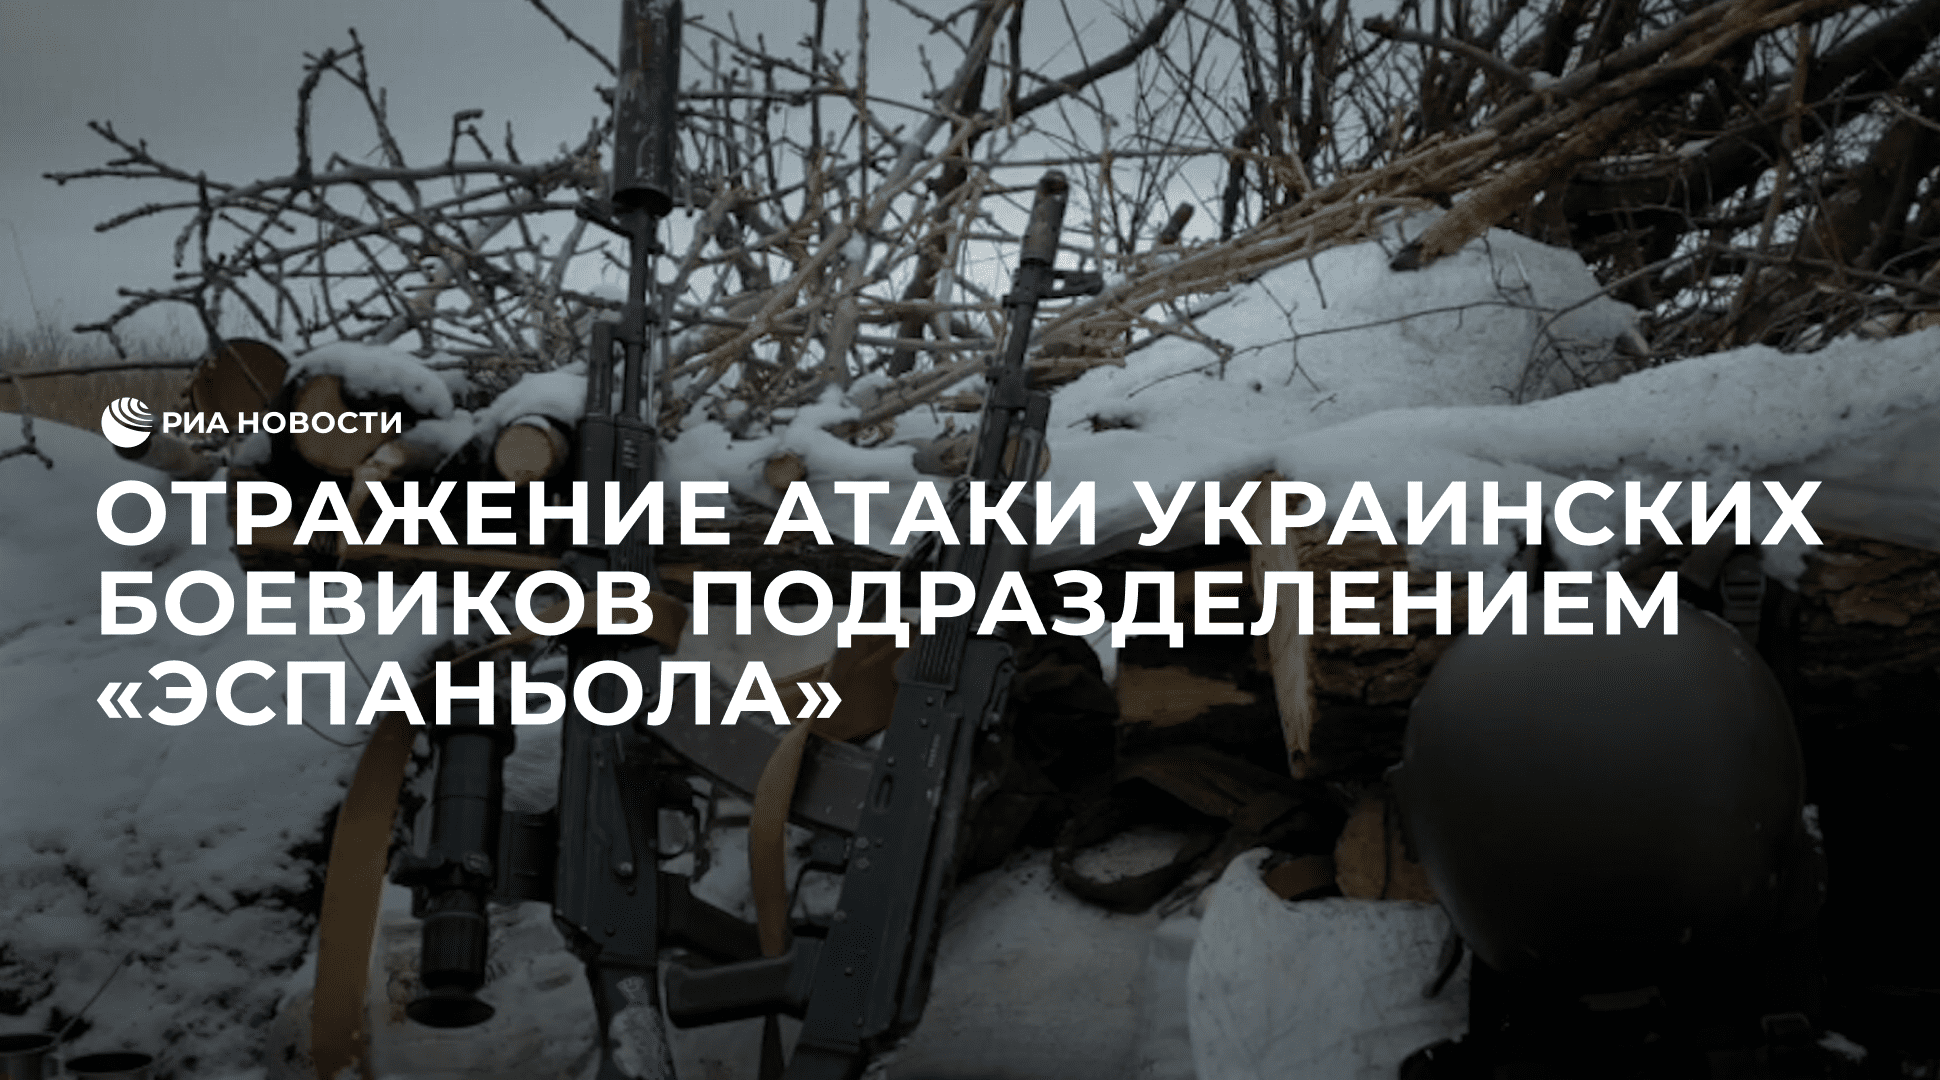 Отражение атаки украинских боевиков подразделением "Эспаньола"